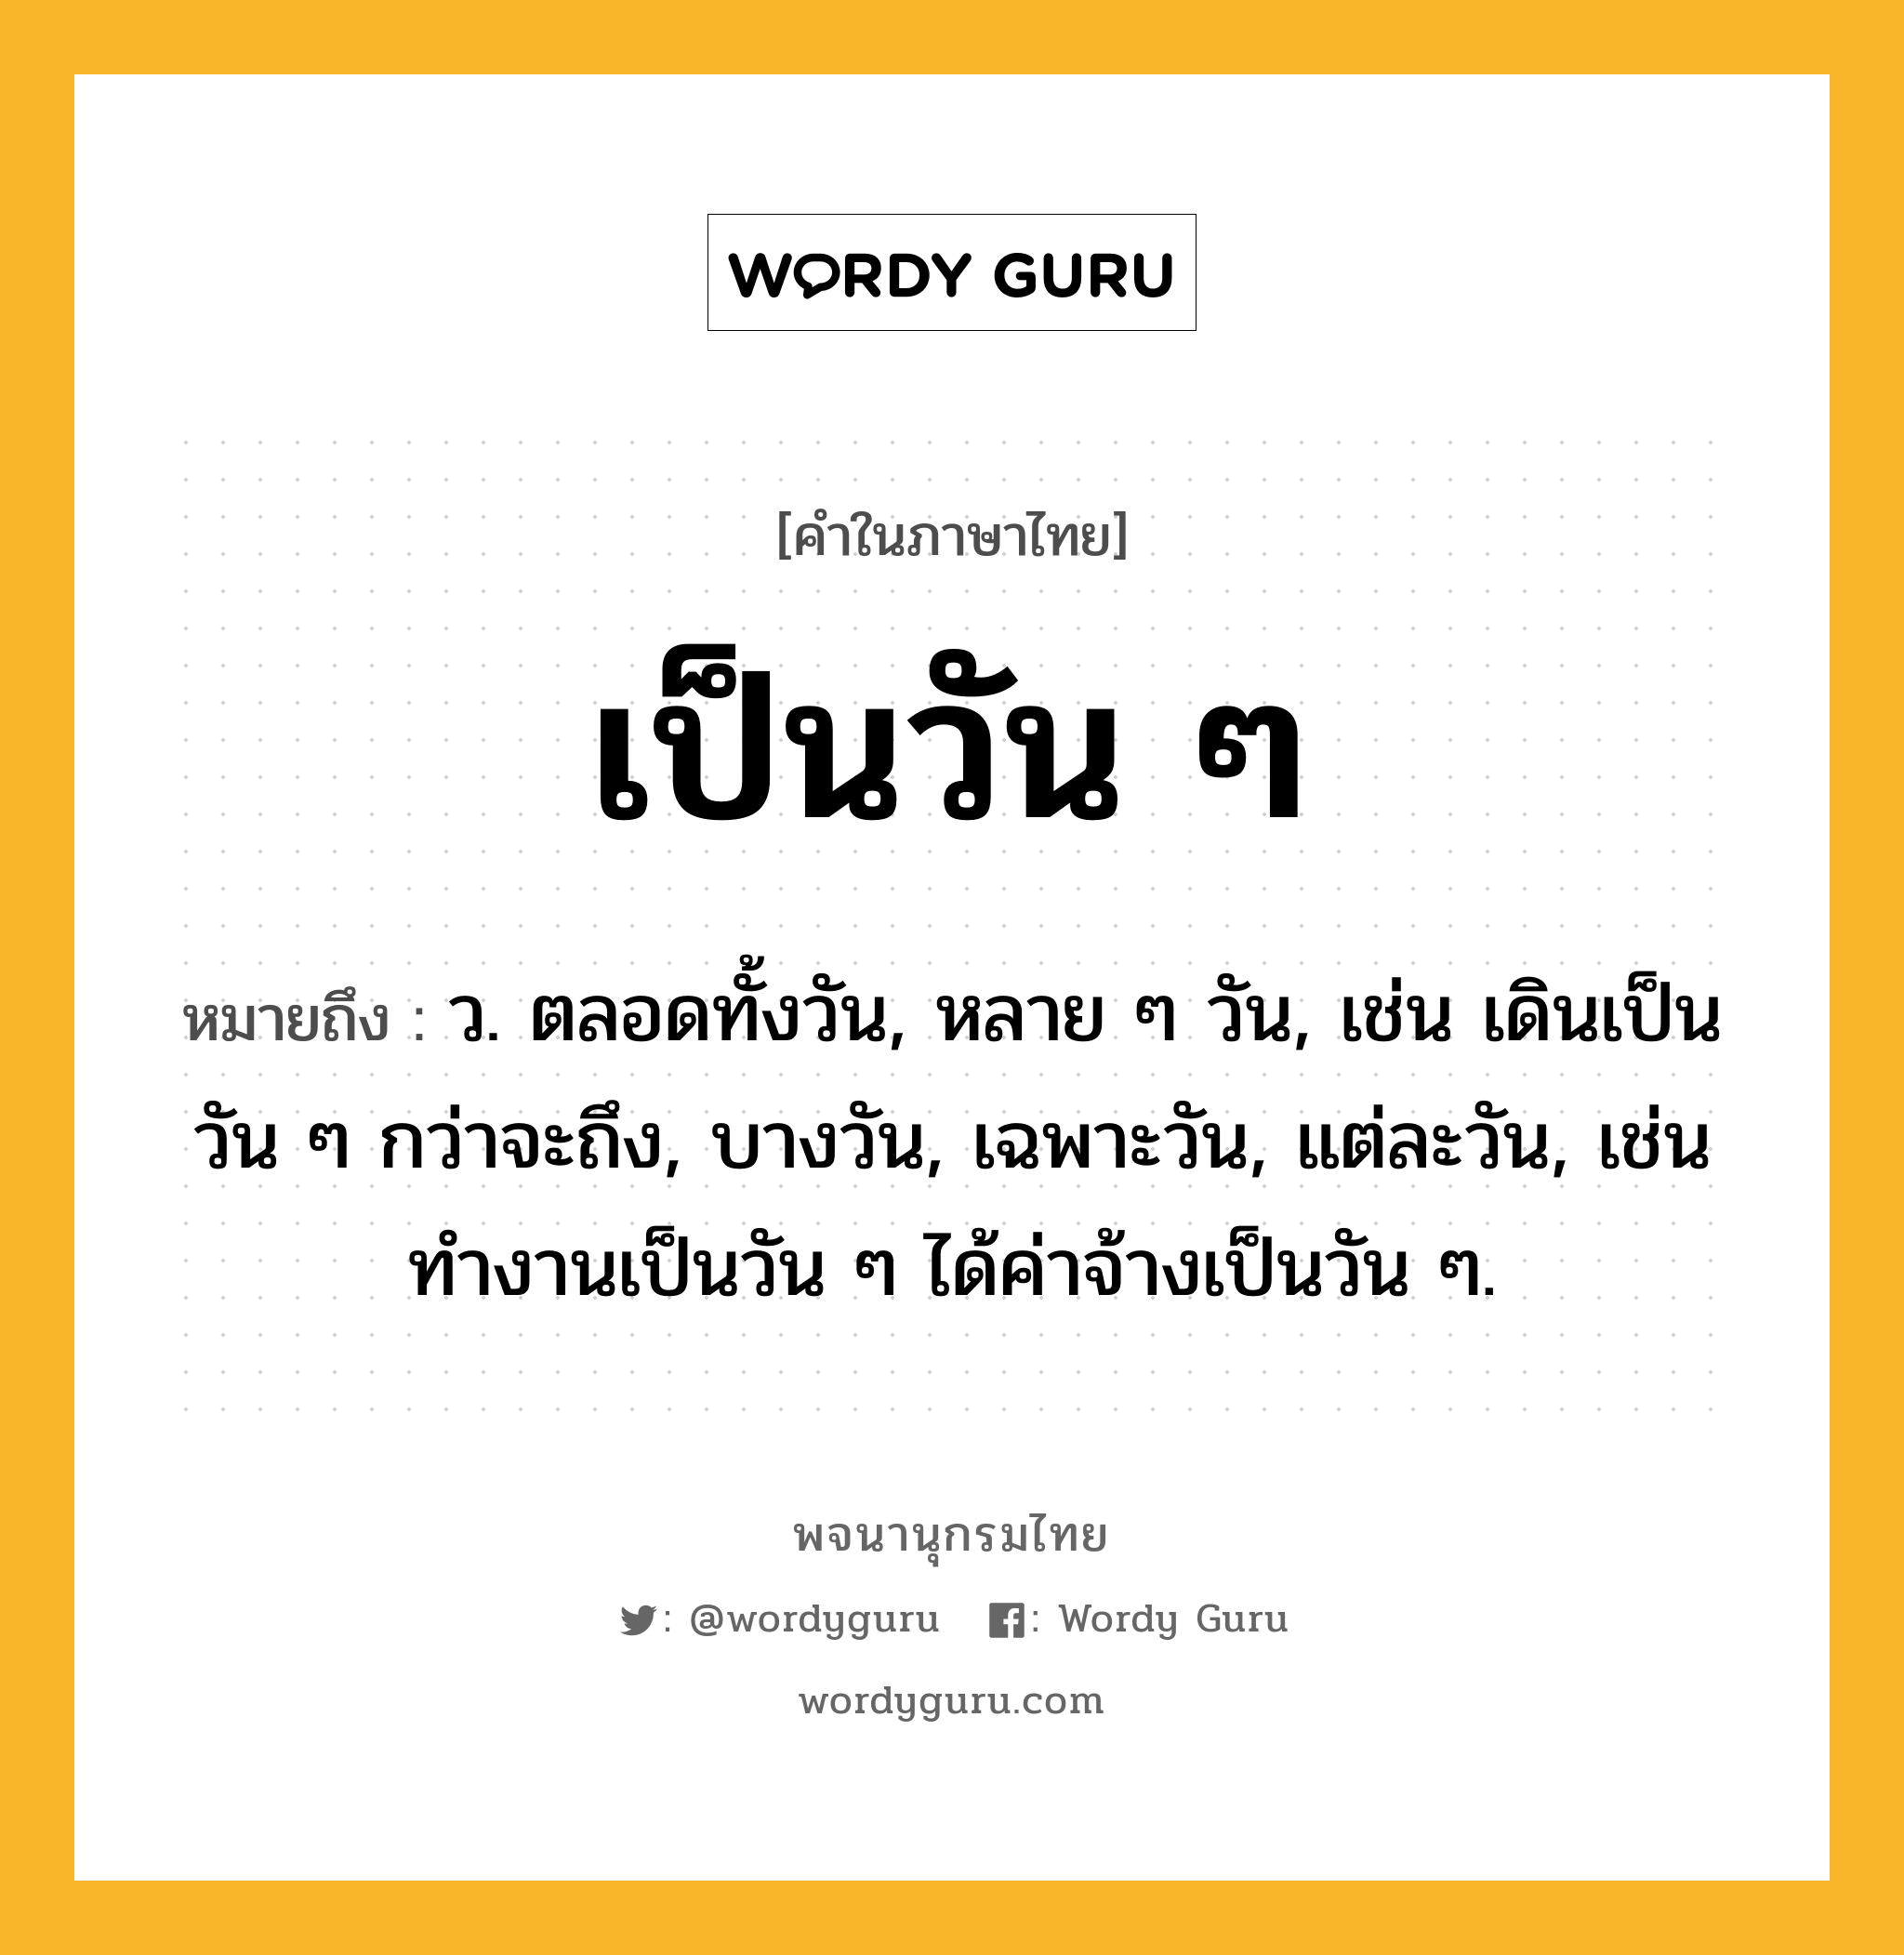 เป็นวัน ๆ ความหมาย หมายถึงอะไร?, คำในภาษาไทย เป็นวัน ๆ หมายถึง ว. ตลอดทั้งวัน, หลาย ๆ วัน, เช่น เดินเป็นวัน ๆ กว่าจะถึง, บางวัน, เฉพาะวัน, แต่ละวัน, เช่น ทำงานเป็นวัน ๆ ได้ค่าจ้างเป็นวัน ๆ.